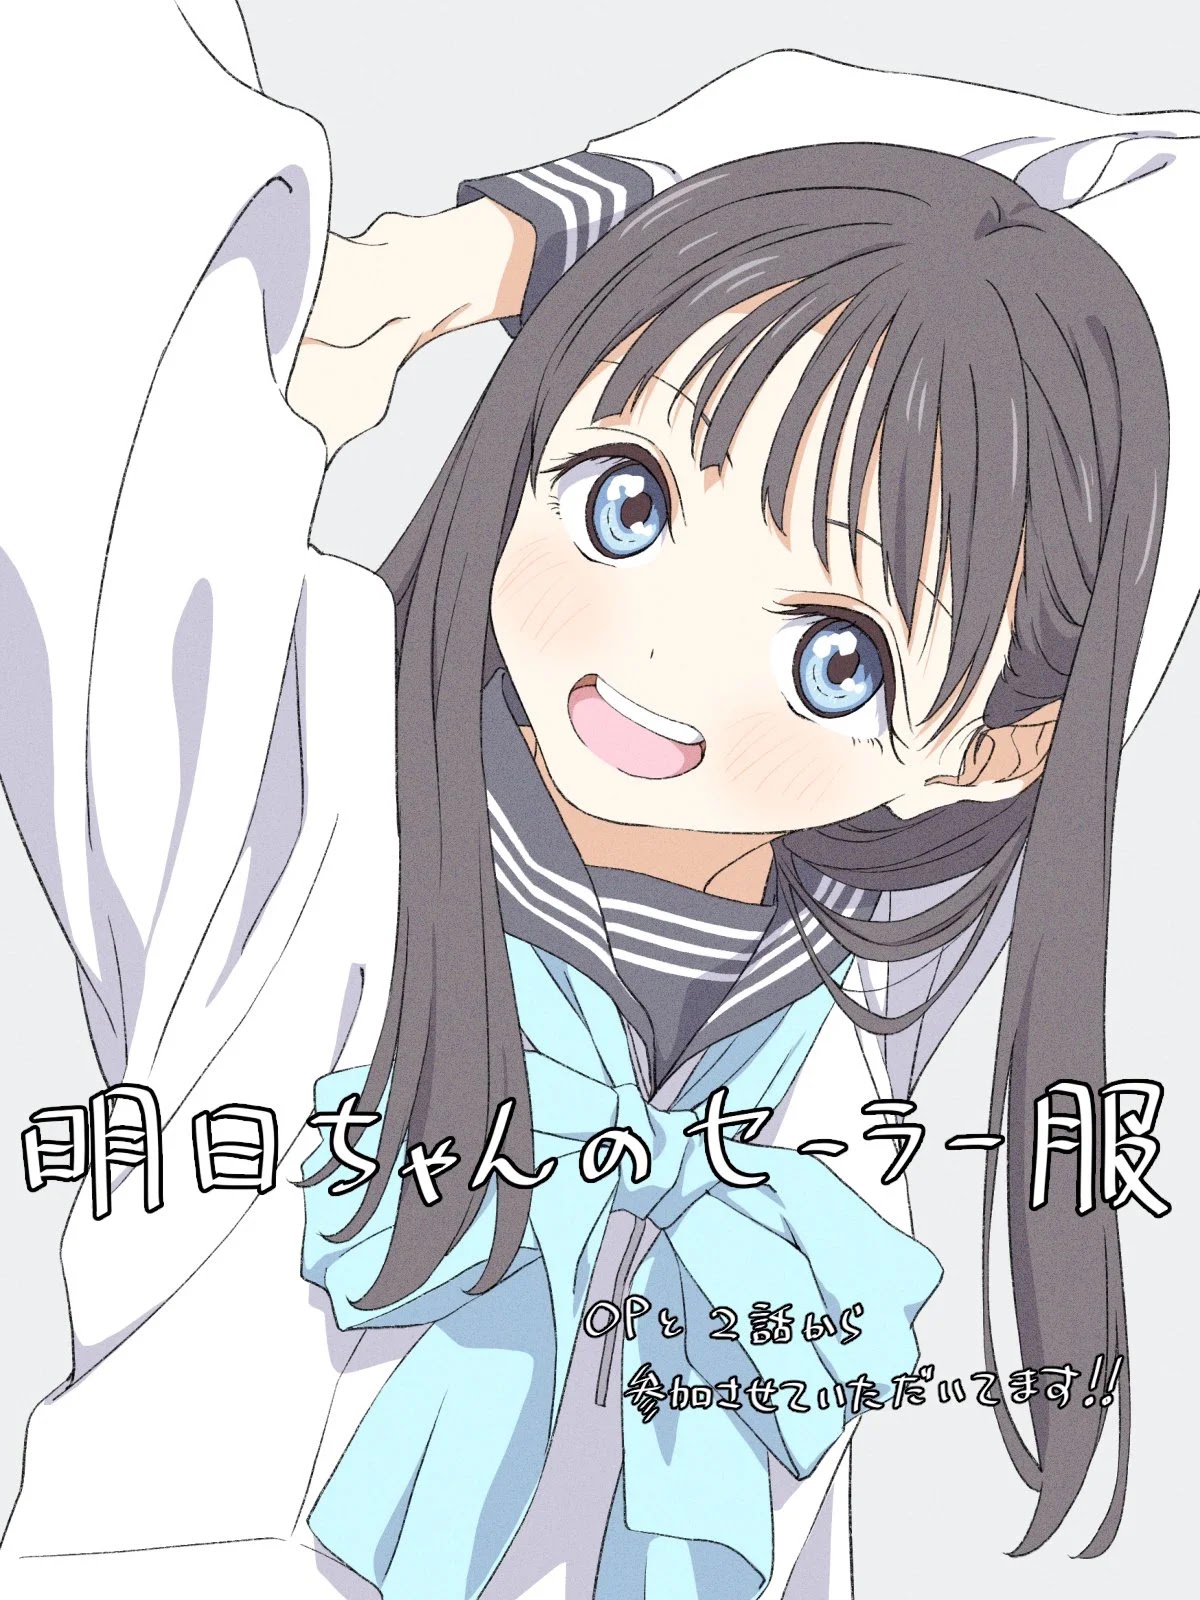 Akebi-chan no Sailor-fuku: Episódio 4 é Comemorado com Ilustrações